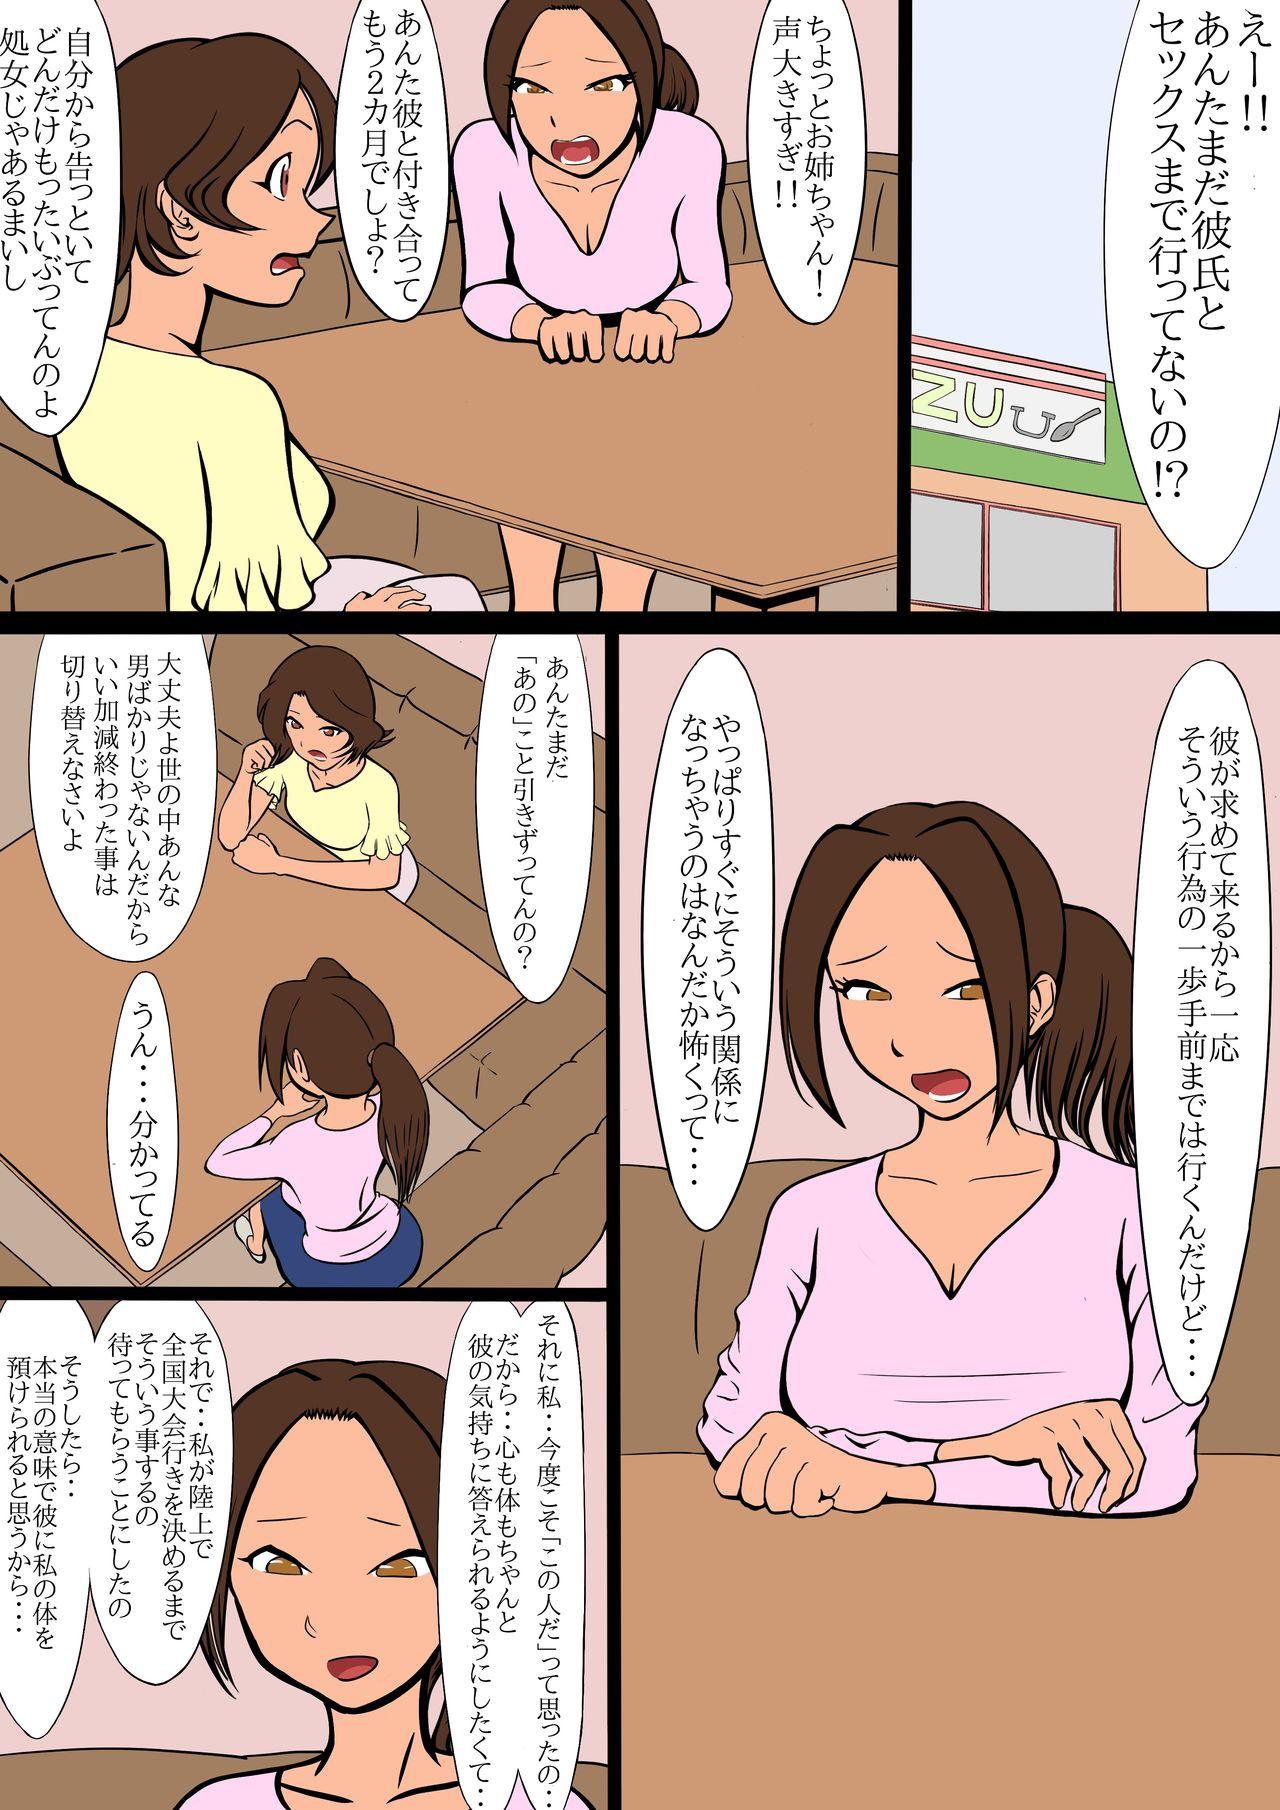 Outdoor Sex netorare furasshu bakku - Original Hot Fucking - Page 11